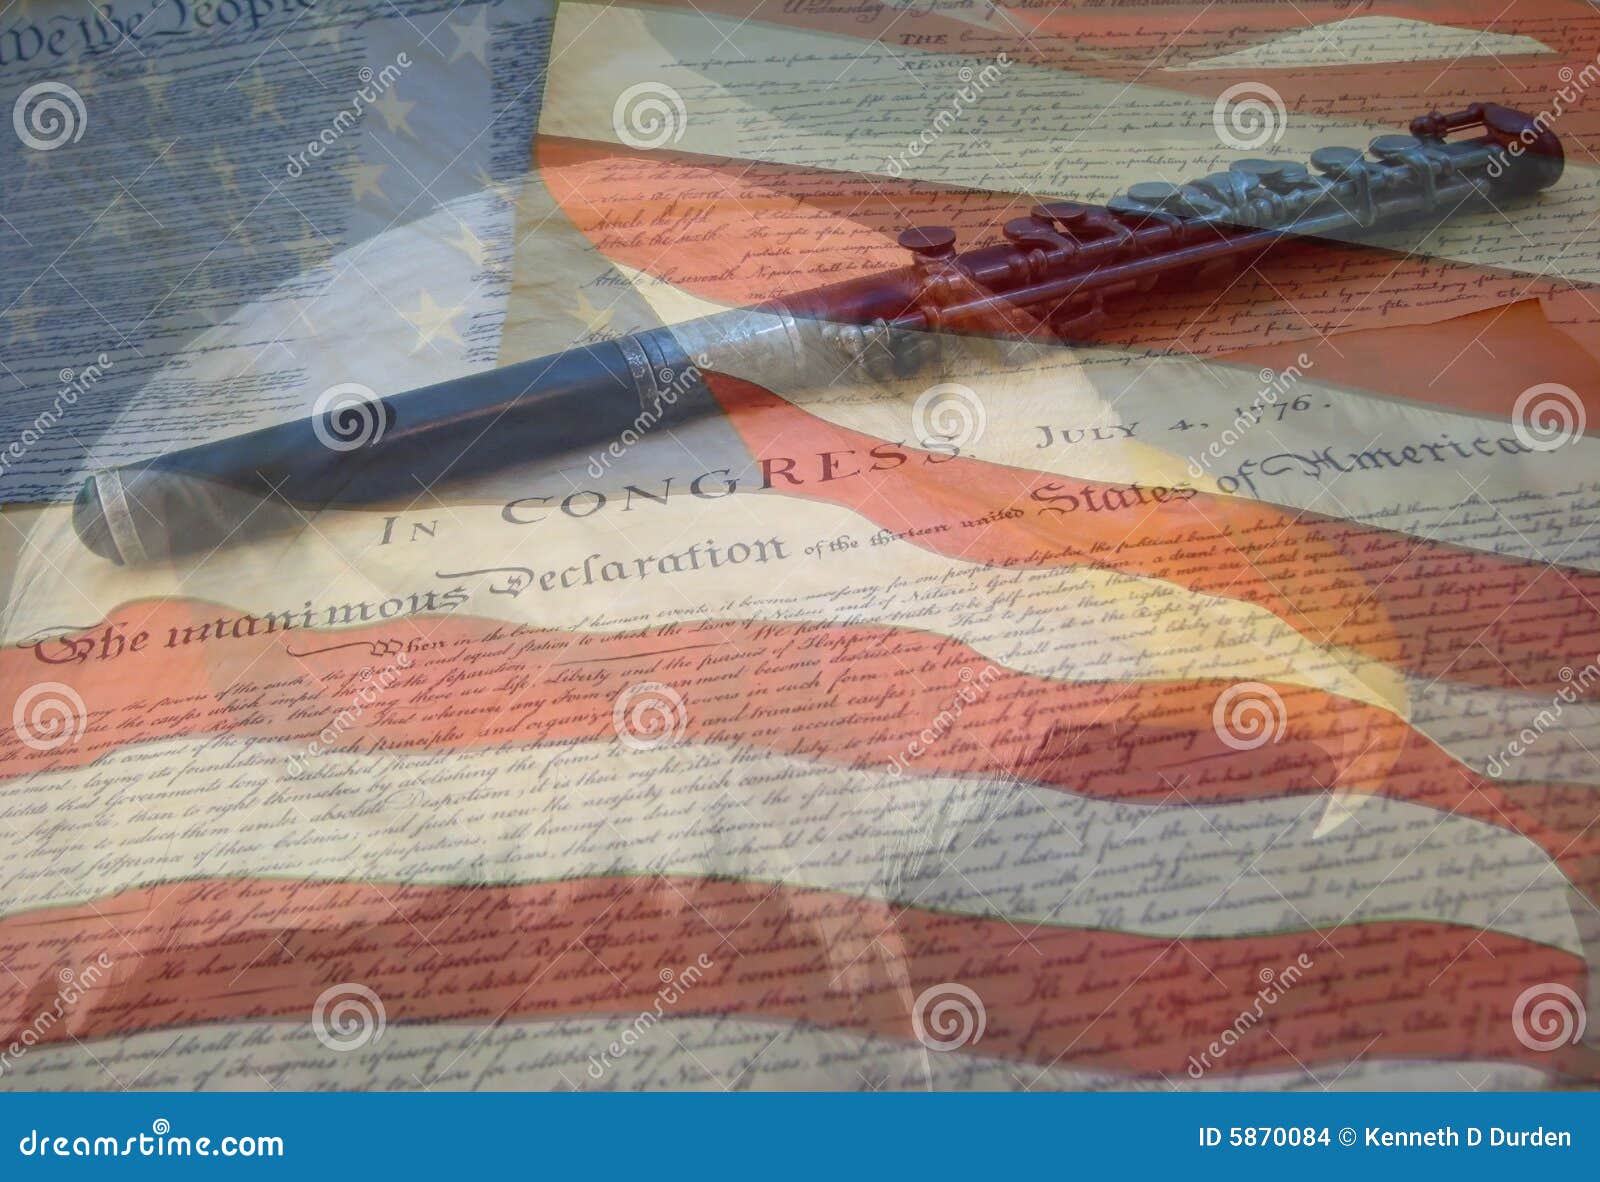 De Vlag en de Documenten van de adelaar. Een samenstelling van twee foto's die door de auteur worden genomen - de kale adelaar, de Amerikaanse vlag, de Verklaring van Onafhankelijkheid en de Grondwet met Fife combineerden in één foto.